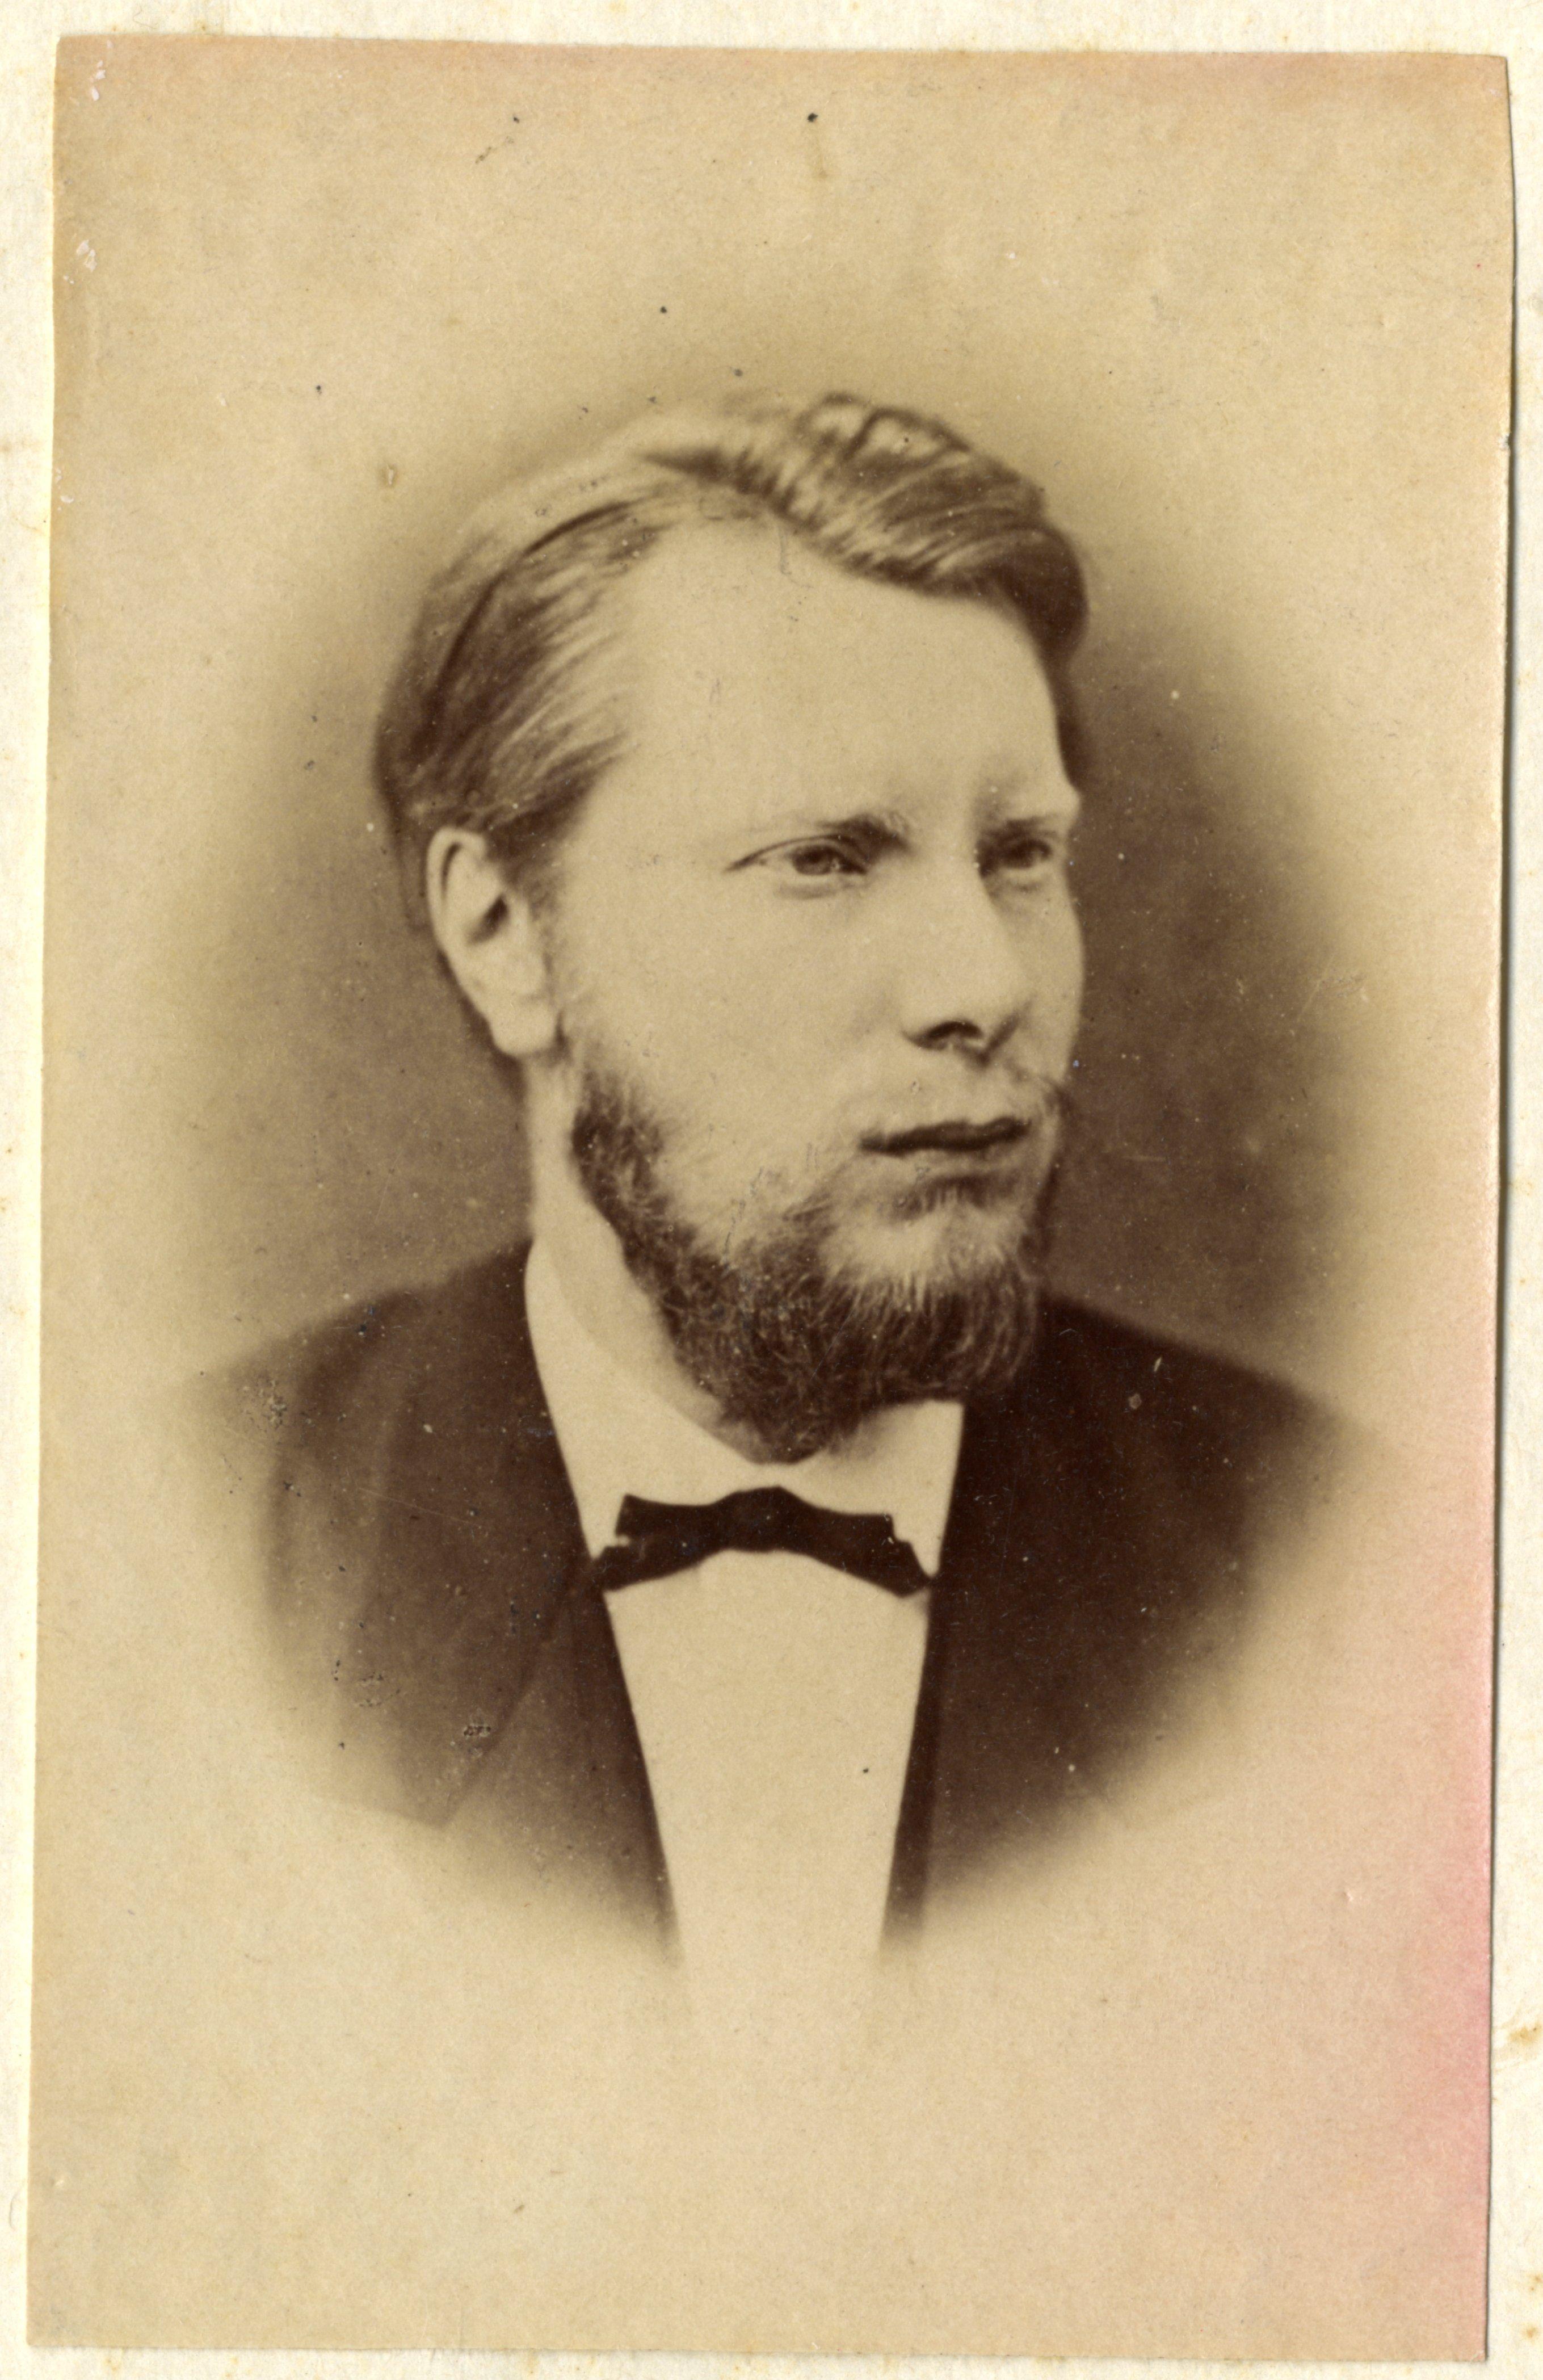 アレクサンダー・ファン・オラニエ＝ナッサウ (1851-1884) - Wikipedia